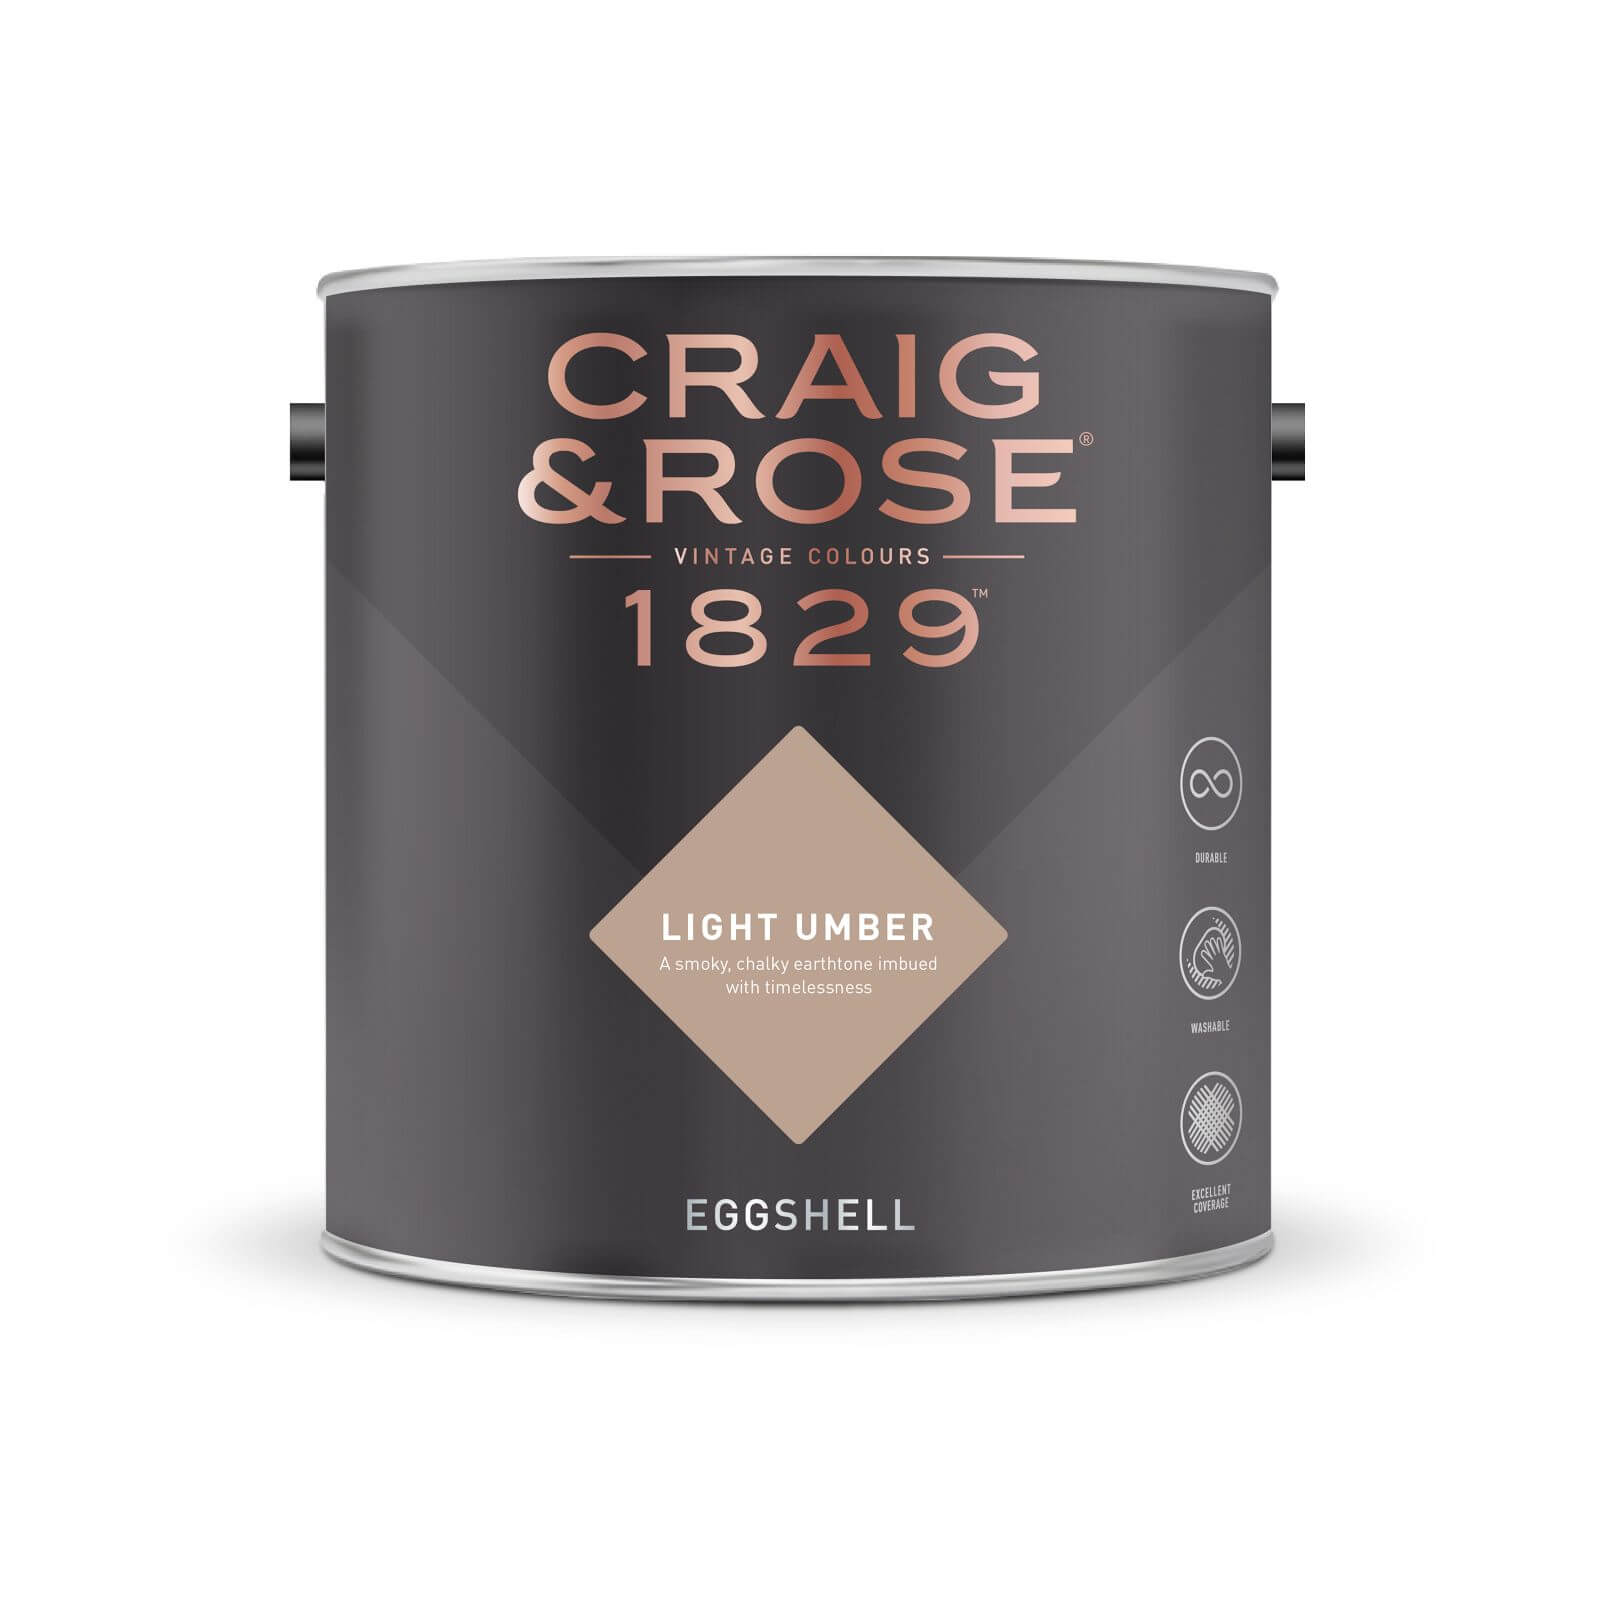 Craig & Rose 1829 Eggshell Paint Light Umber - 2.5L